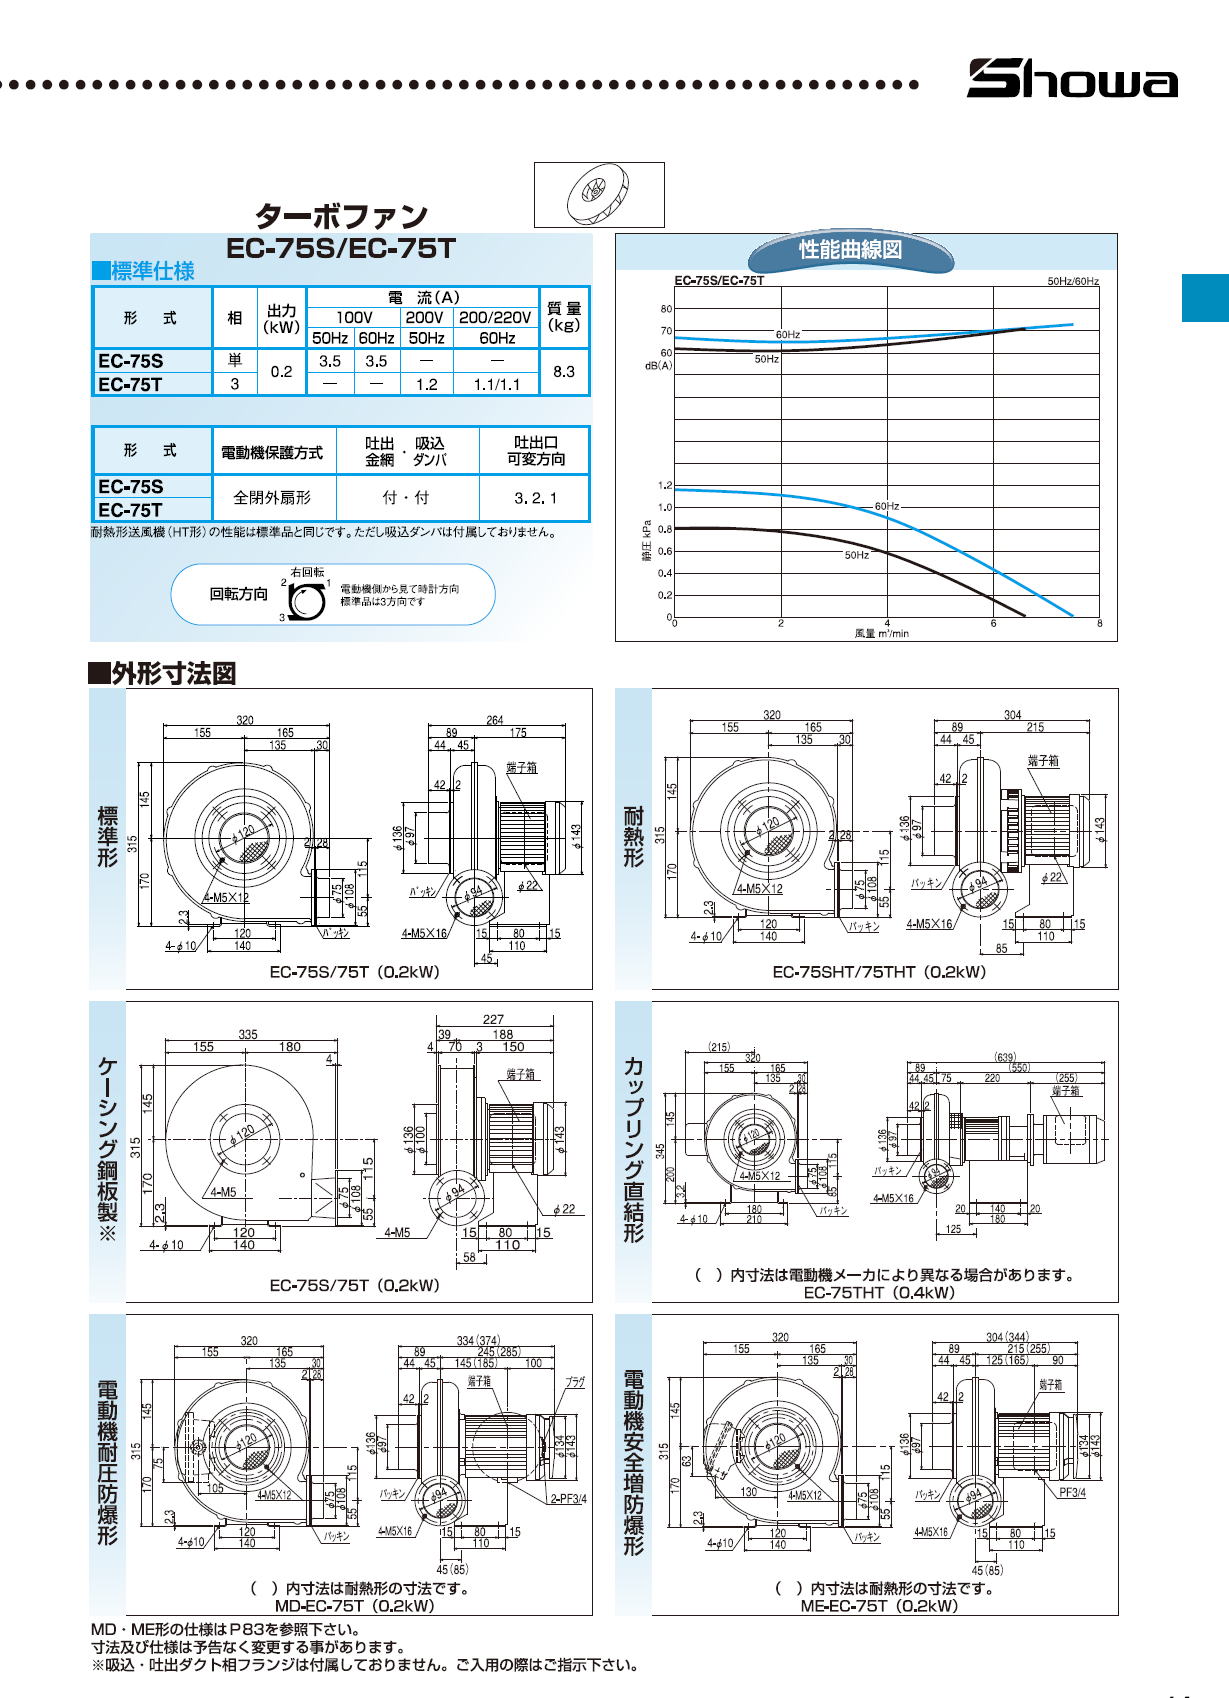 昭和電機 EC-63SG-R3A3 送風機 万能シリーズ(Gタイプ) - DIY・工具